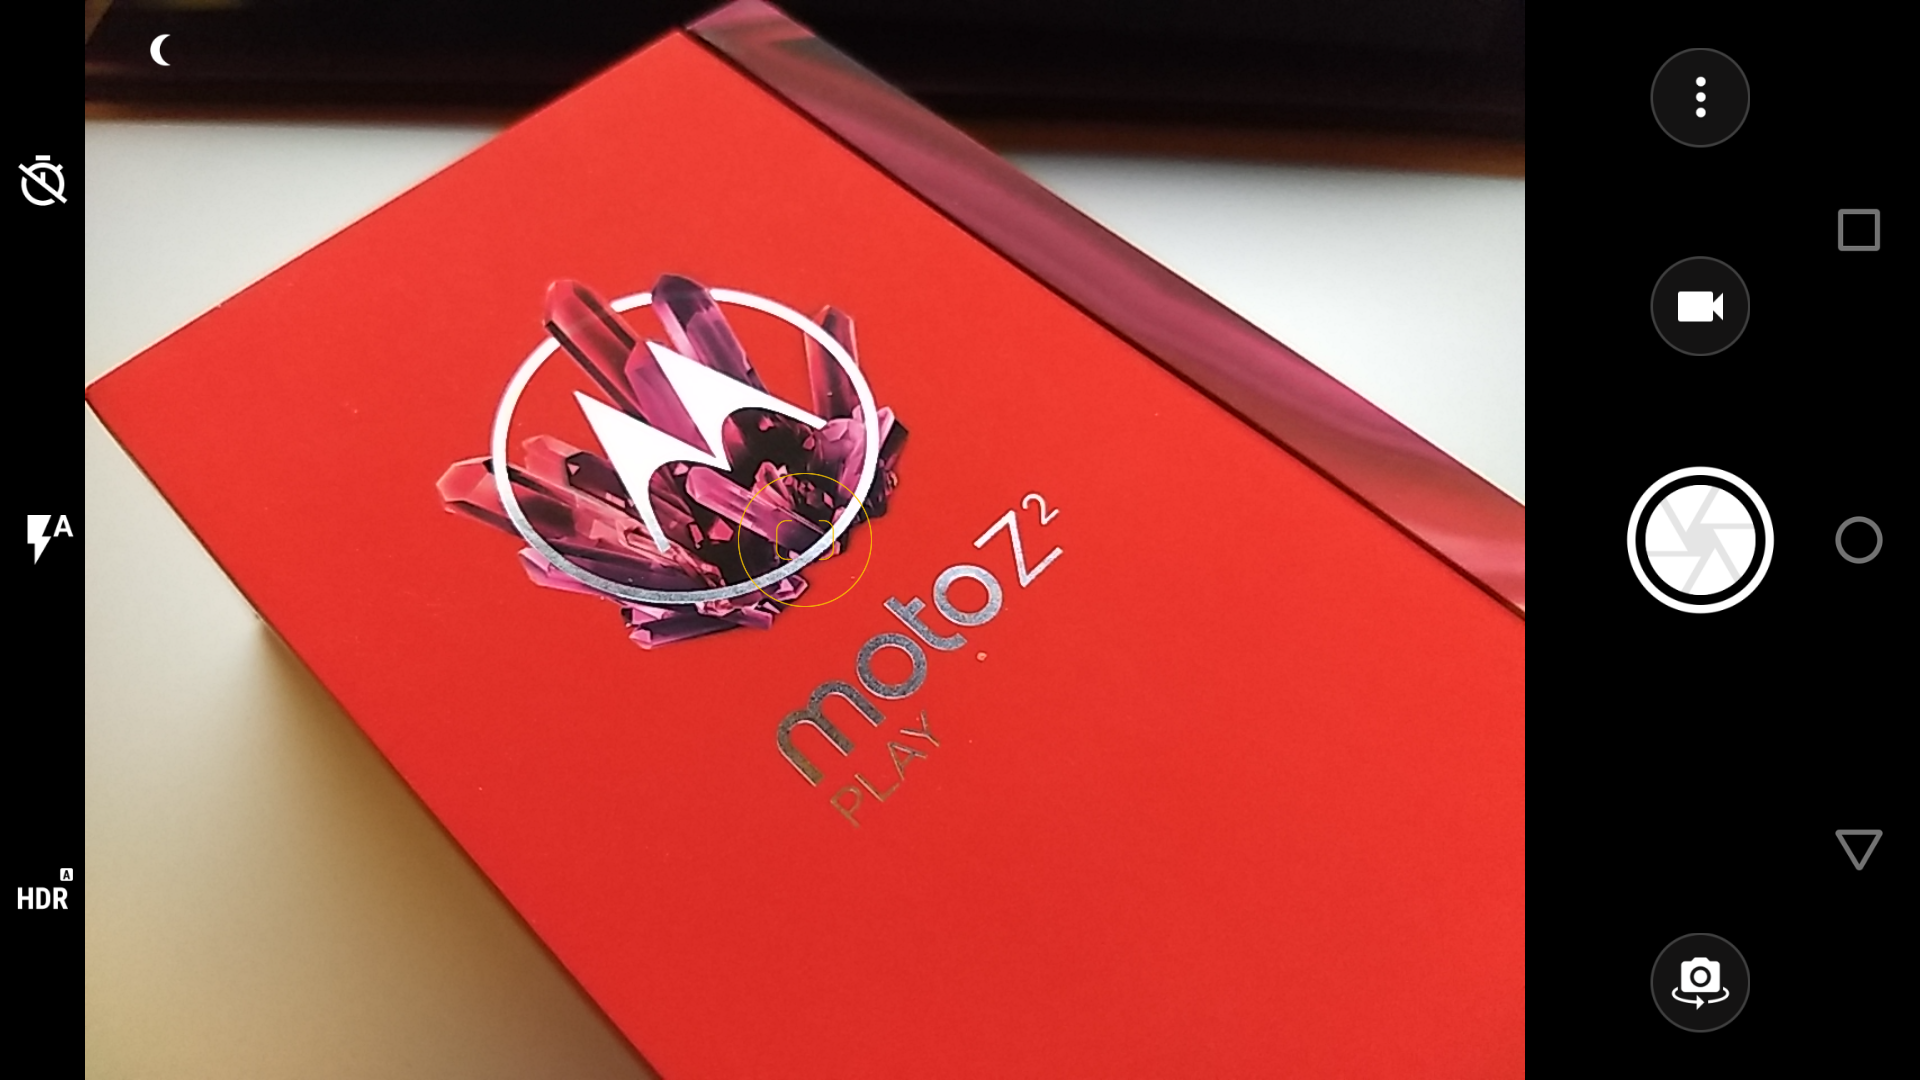 Granska Motorola Moto Z2 Play 10 